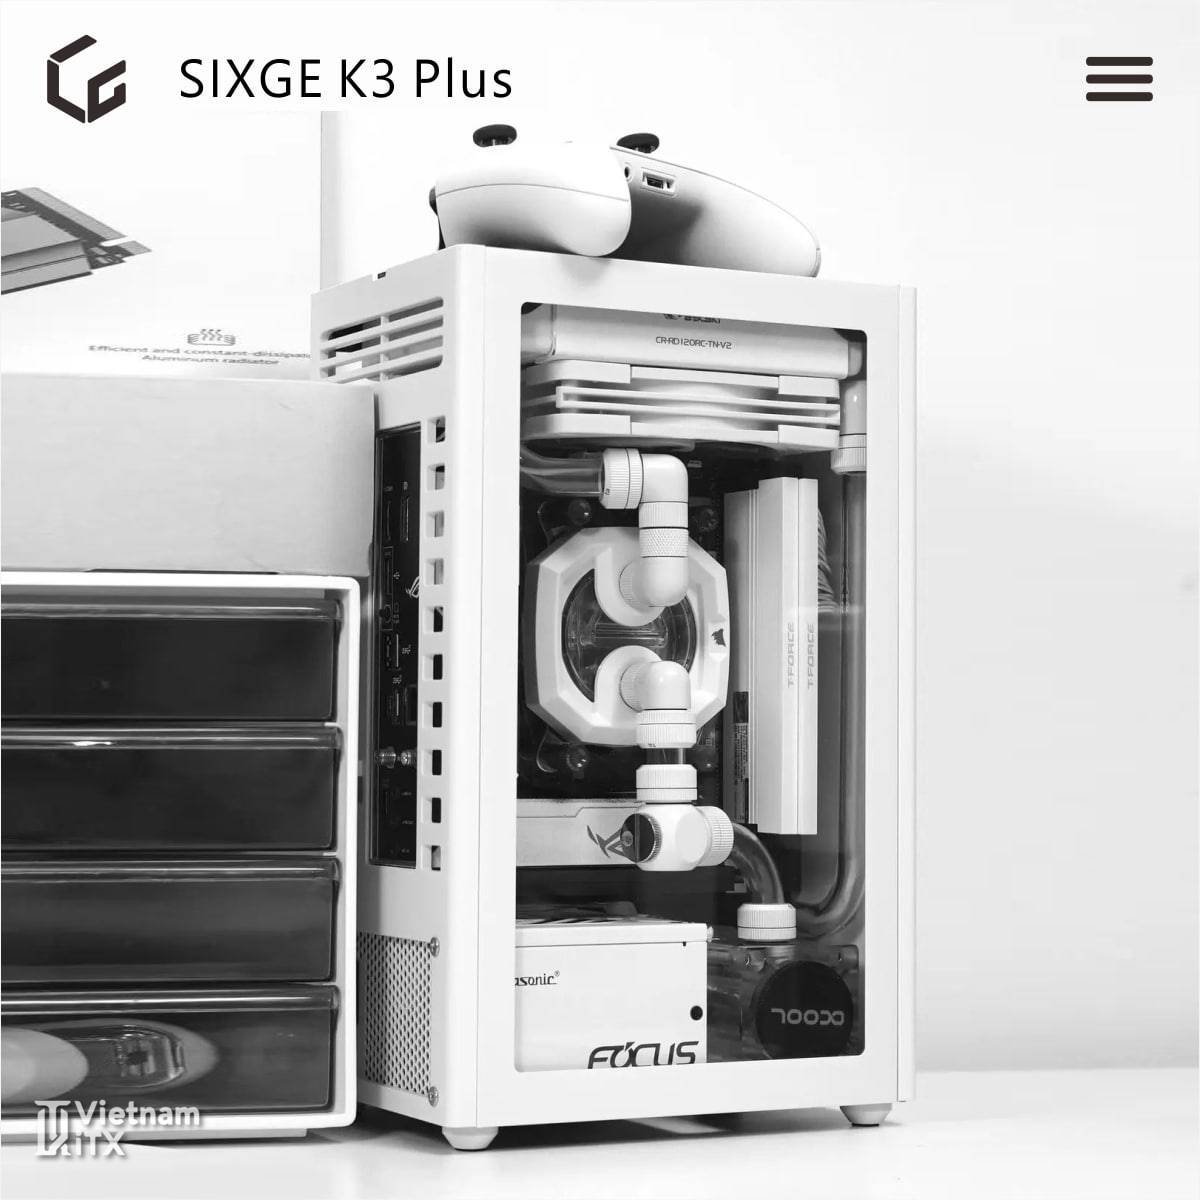 Sixge K3 Plus phiên bản nâng cấp v3.0 tới từ dòng vỏ máy itx K3S